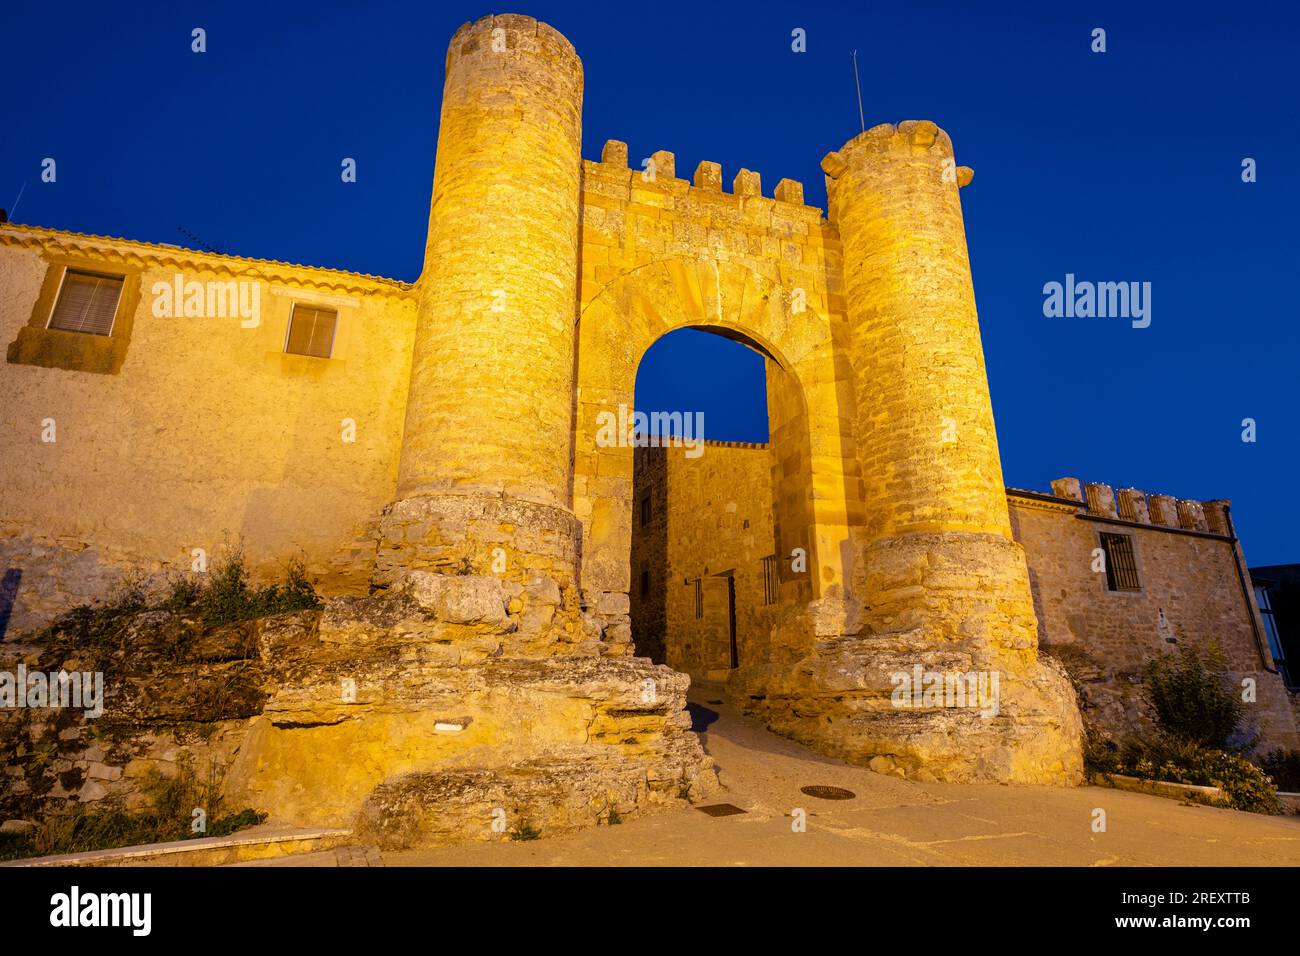 Puerta de la Sollera, Arco de Abajo, 14th century, Walled medieval complex, Retortillo de Soria, Soria, autonomous community of Castilla y León, Spain Stock Photo